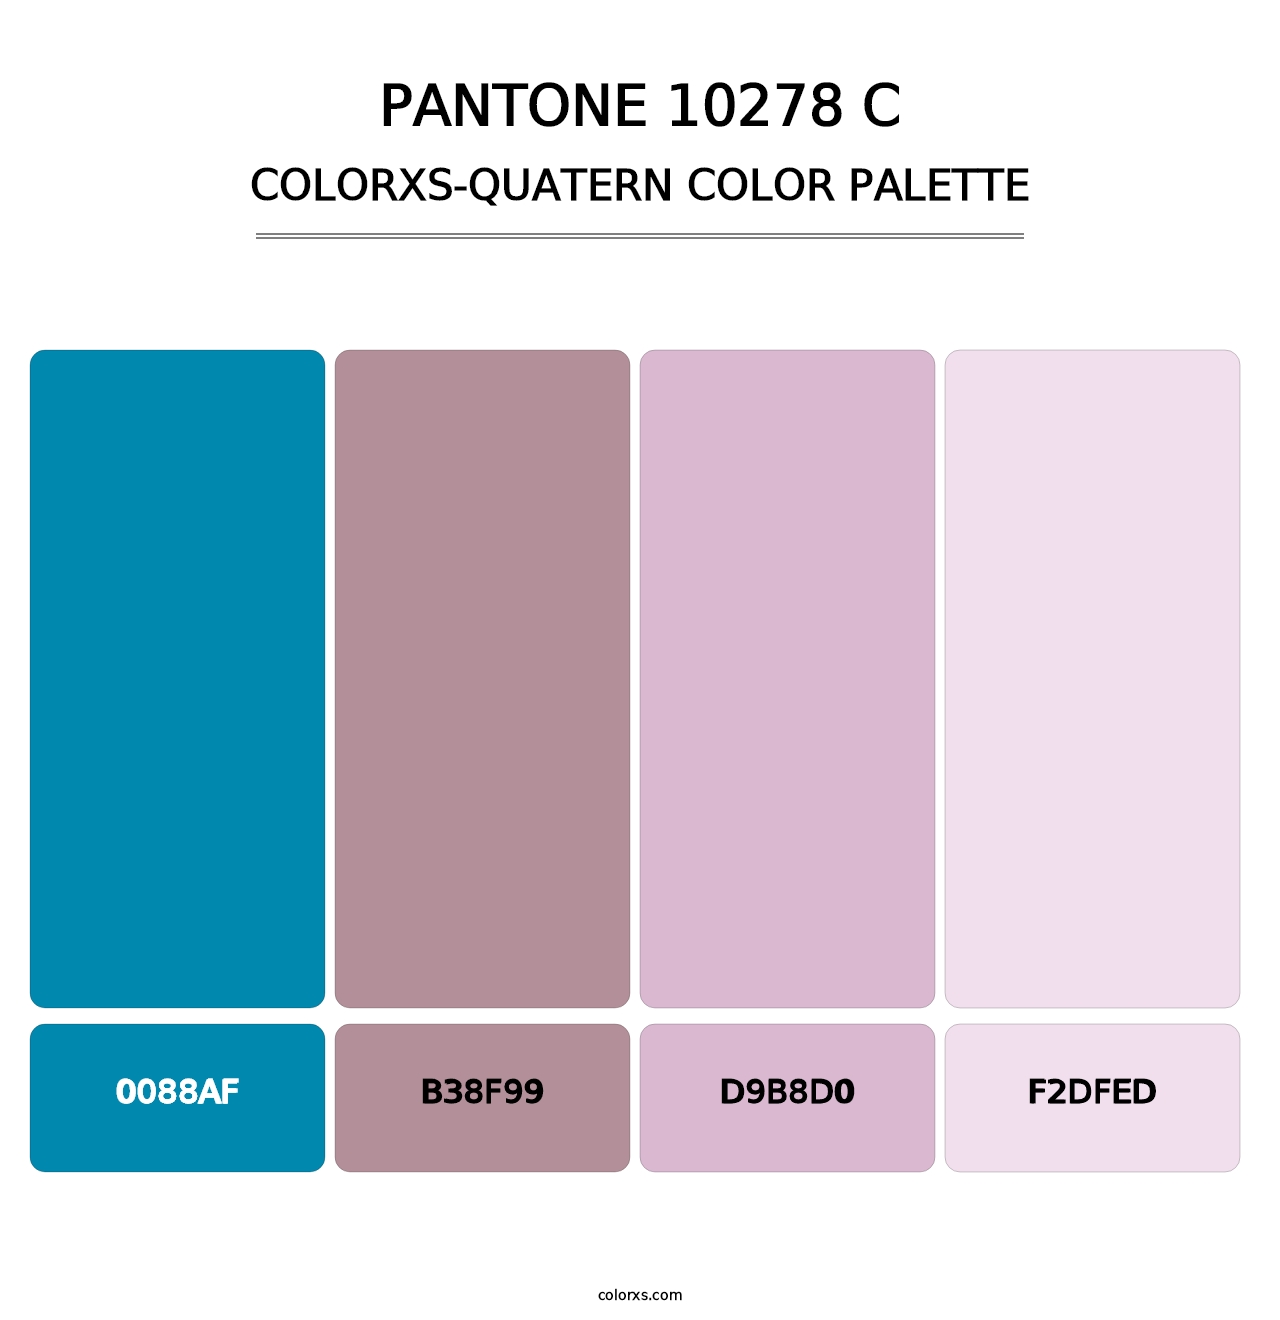 PANTONE 10278 C - Colorxs Quatern Palette